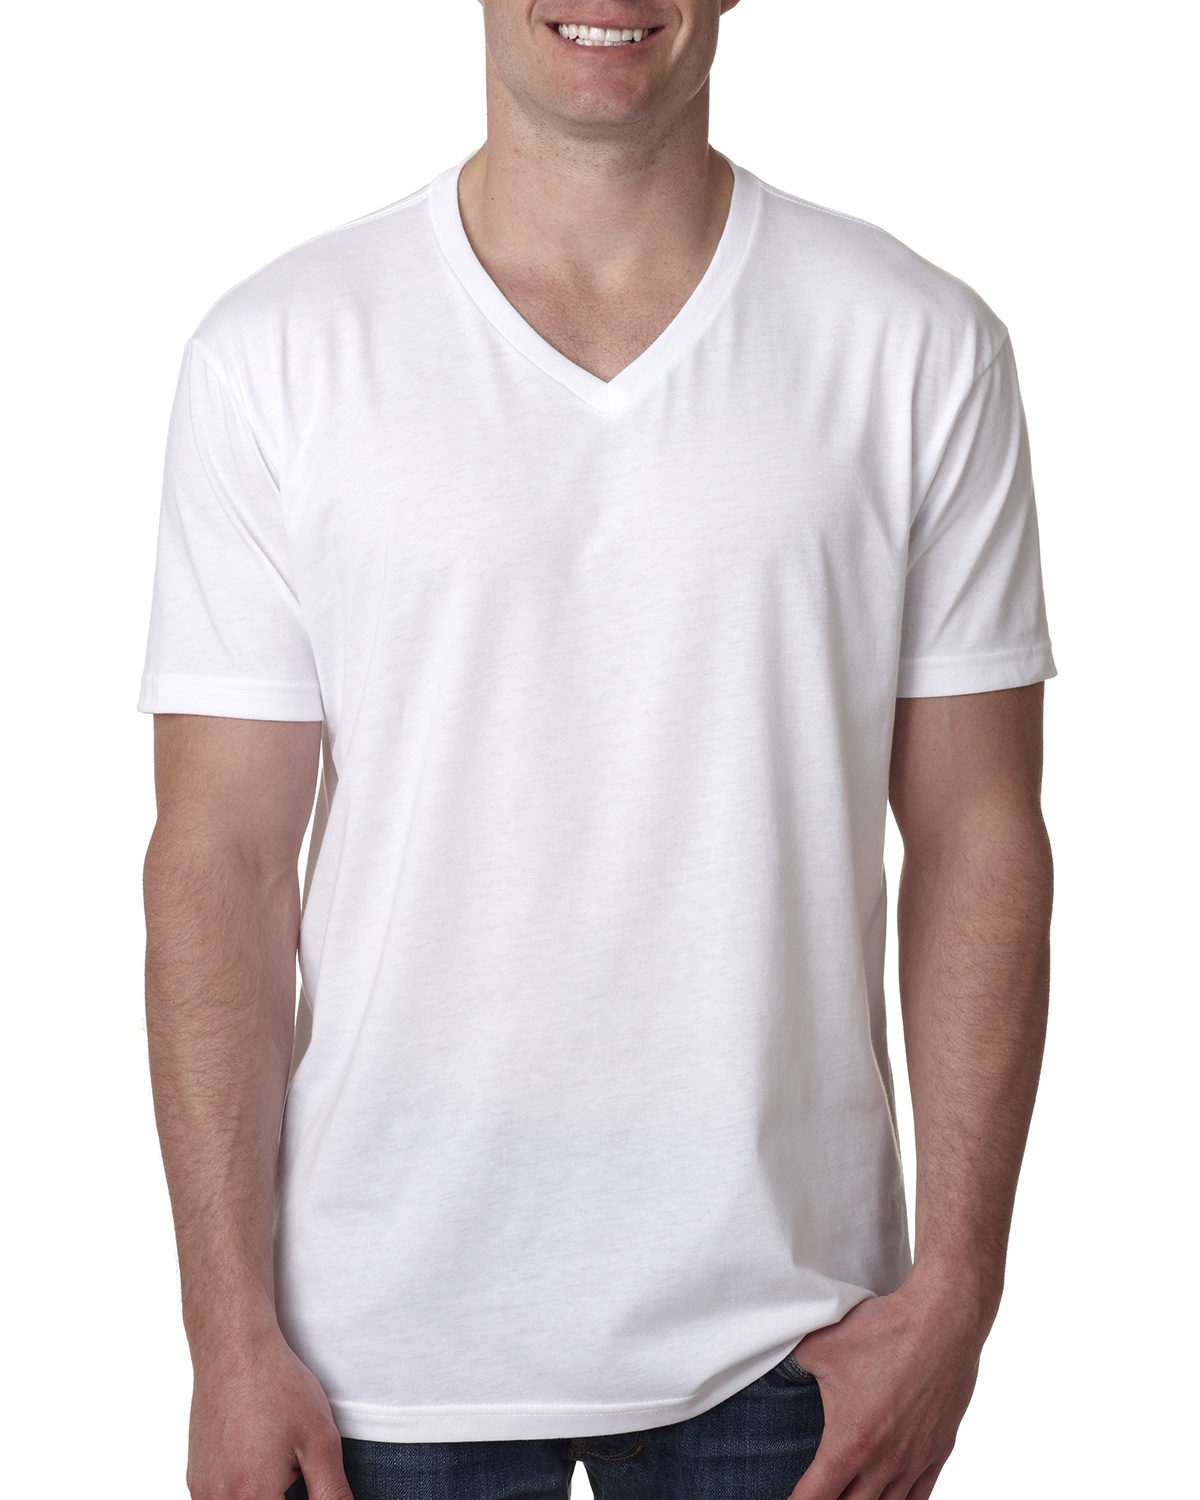 Unisex Poly Cotton Shirts, Unisex Wholesale Clothing